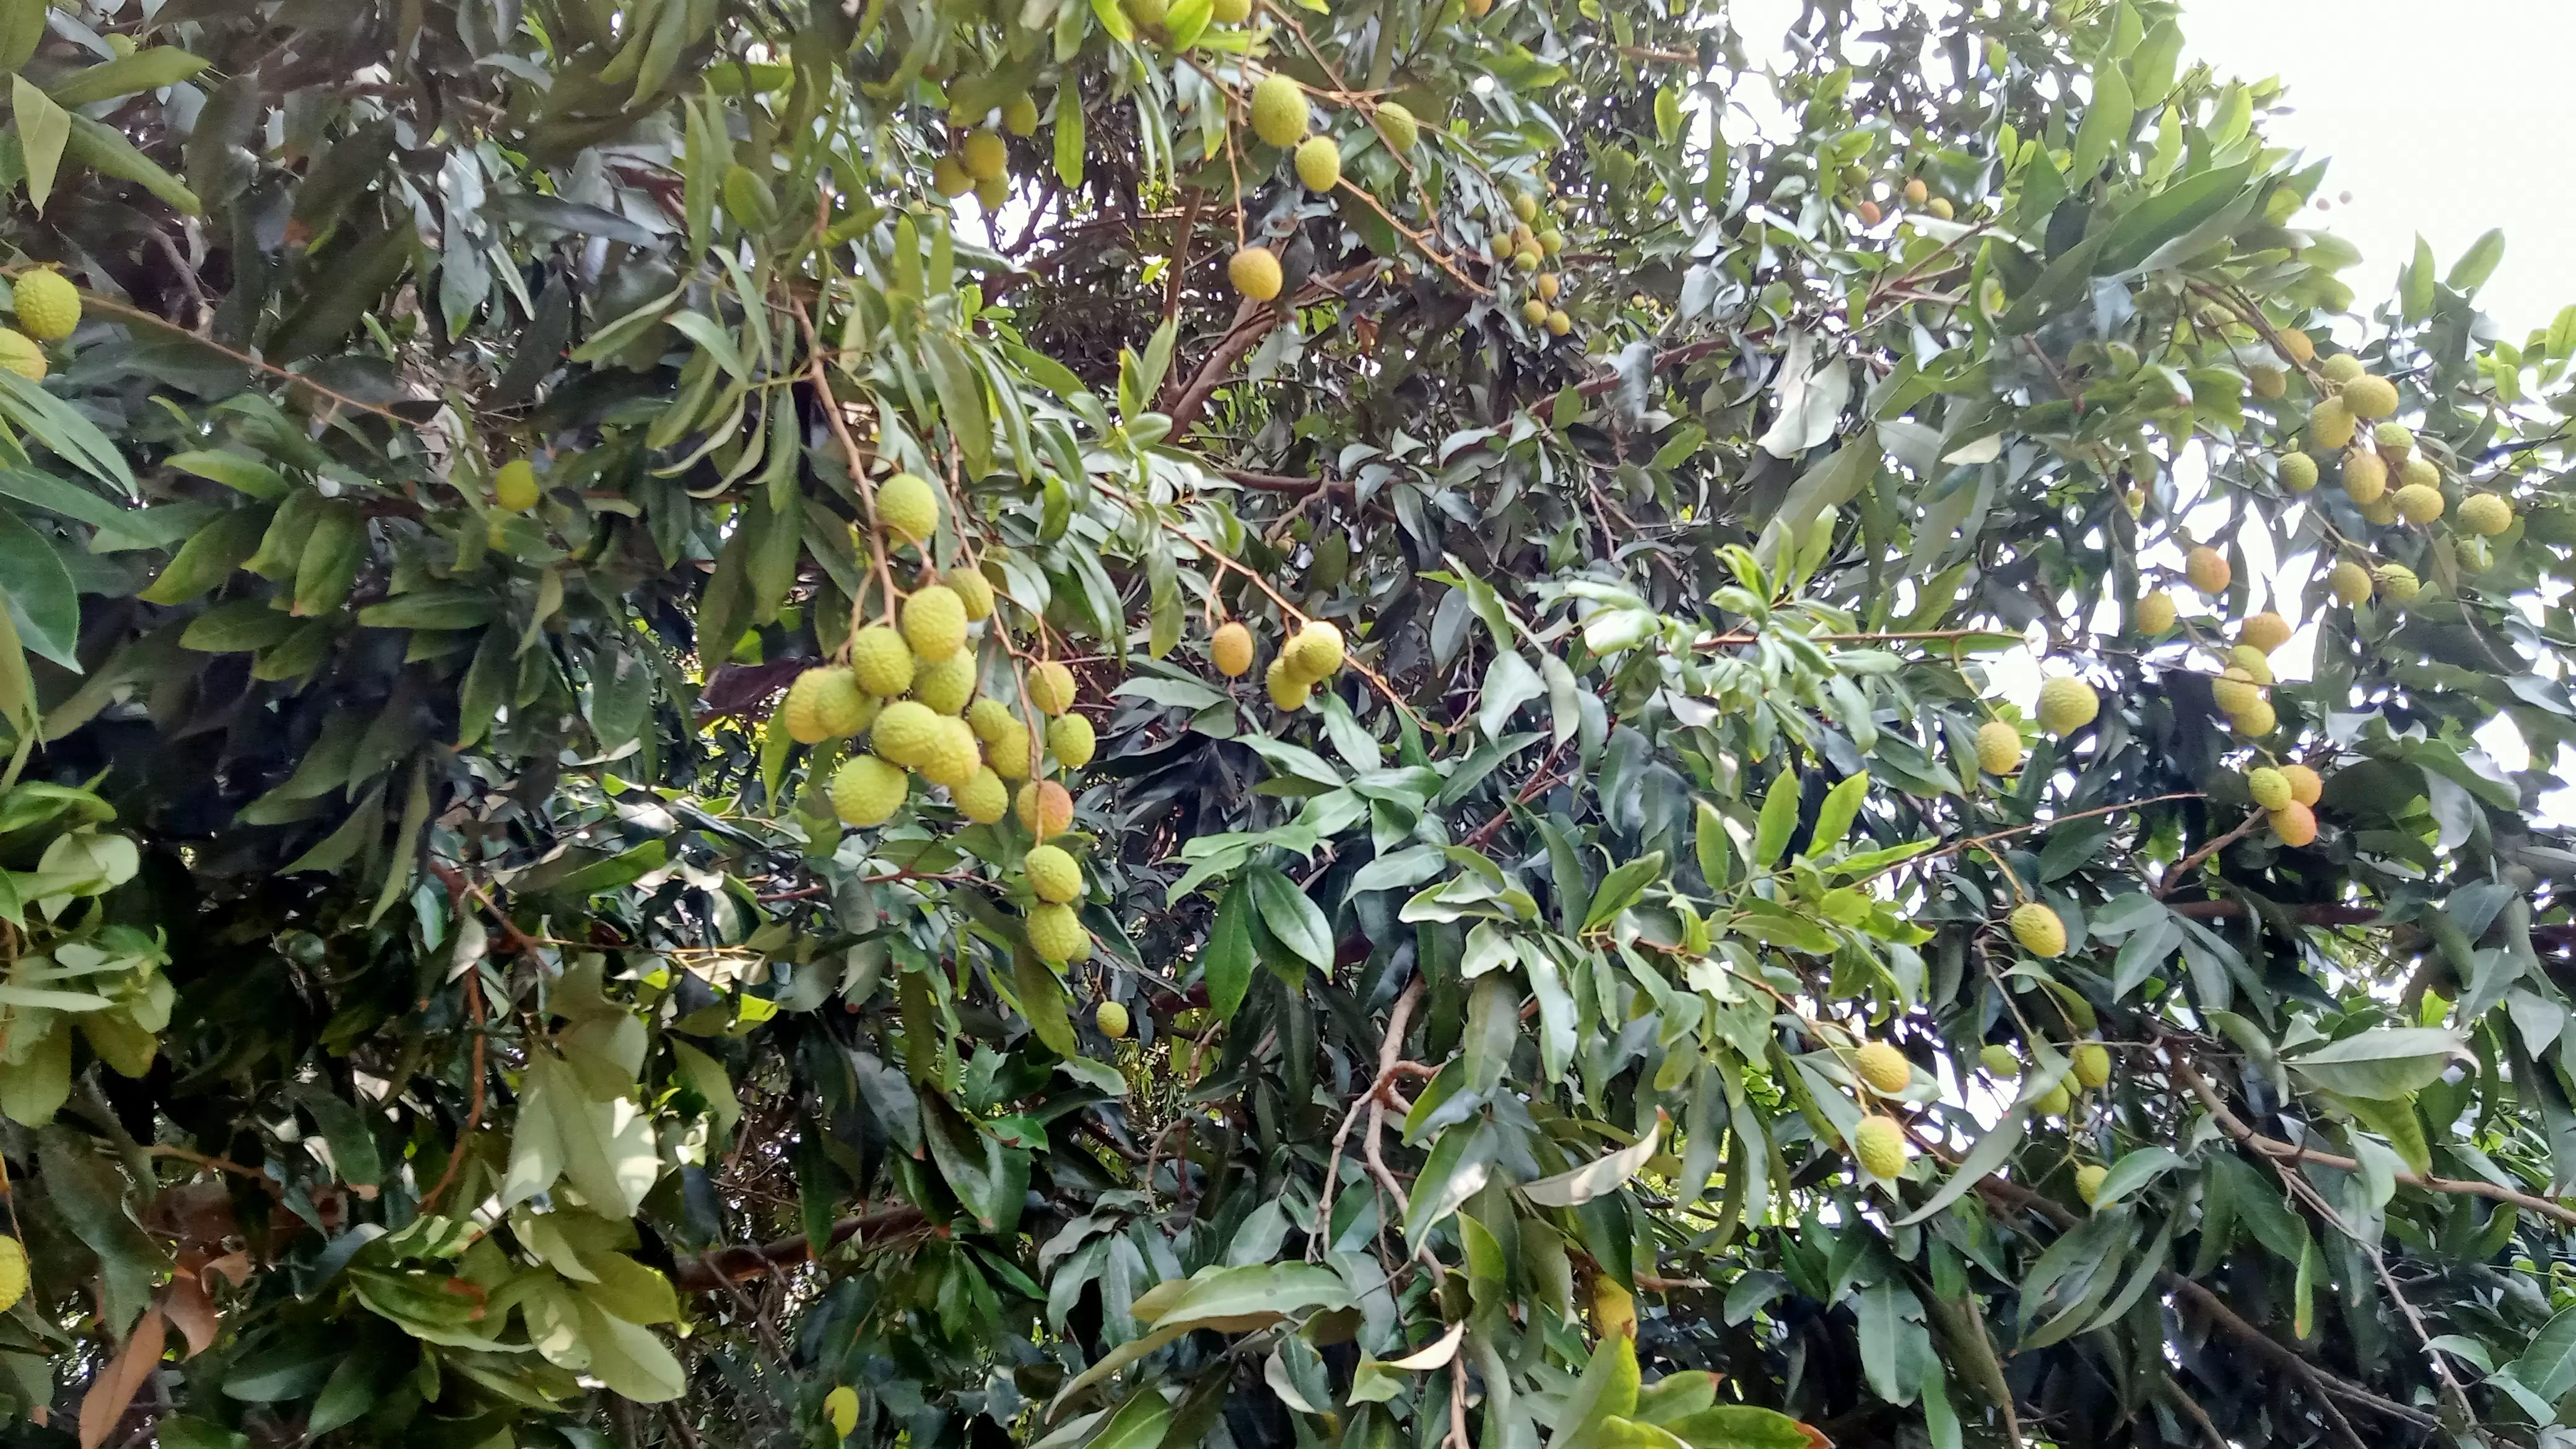 लीची के हब में पड़ी प्रकृति की मार, पेड़ पर कम लदे फल अब टूटकर हो रहे हैं बर्बाद